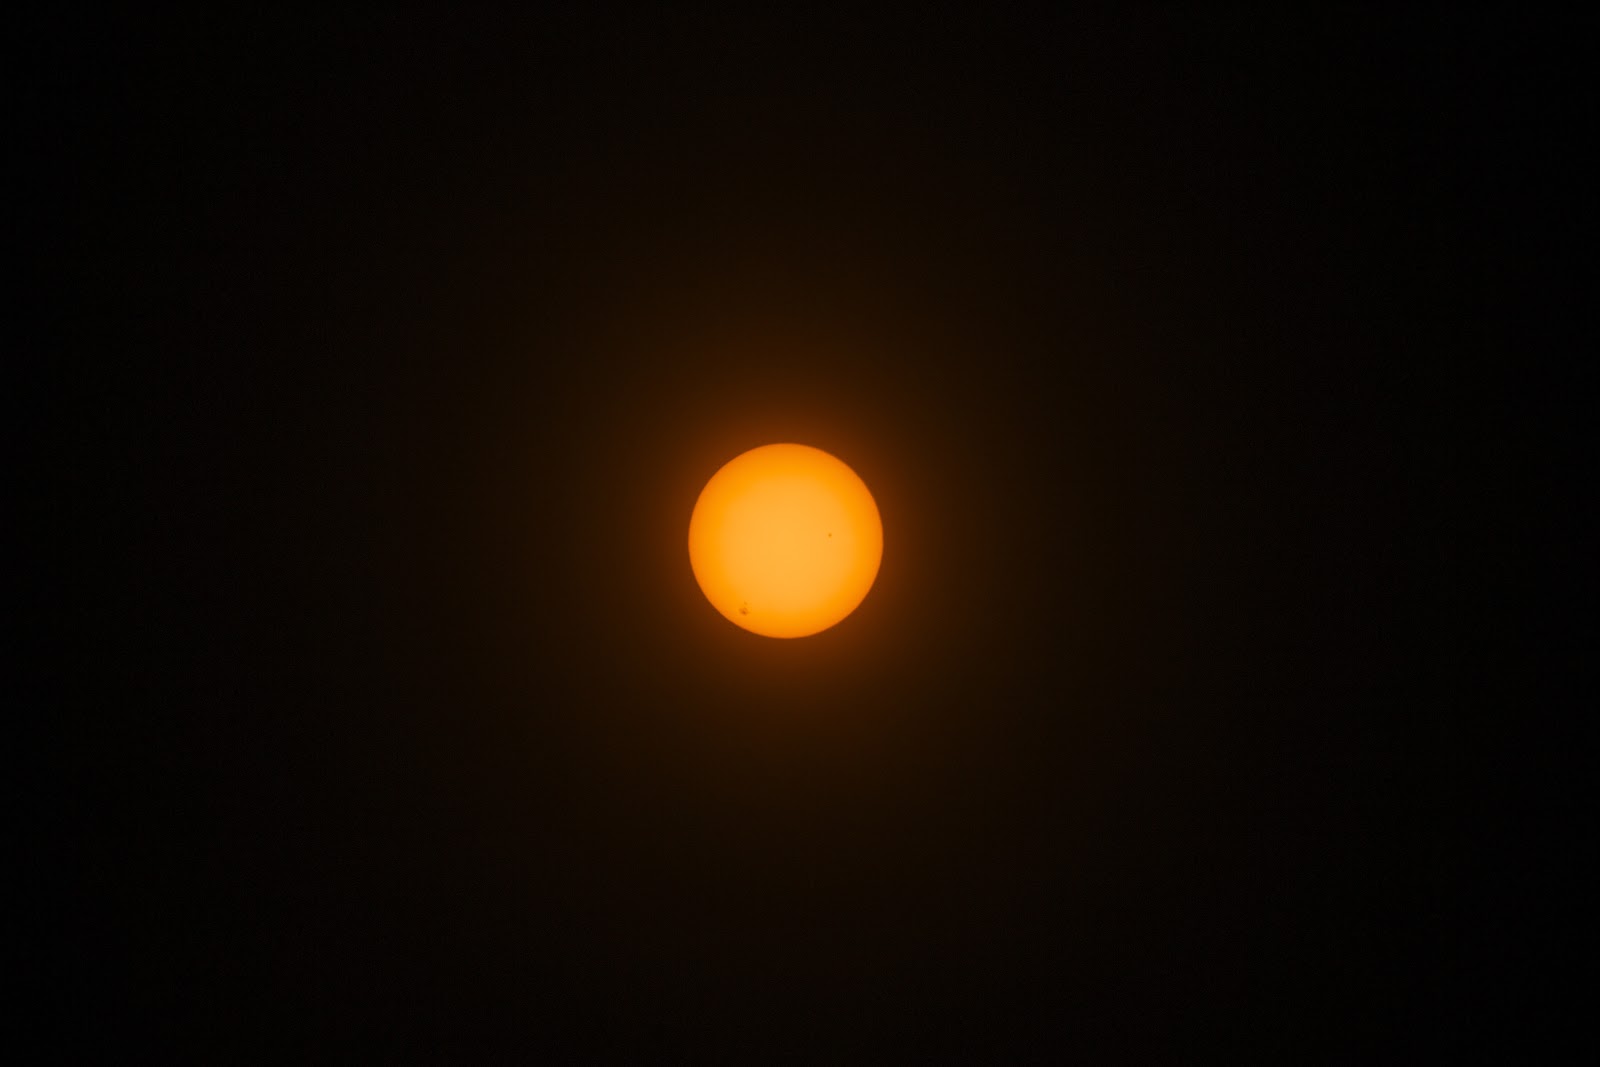 sunspots DSLR at 300mm